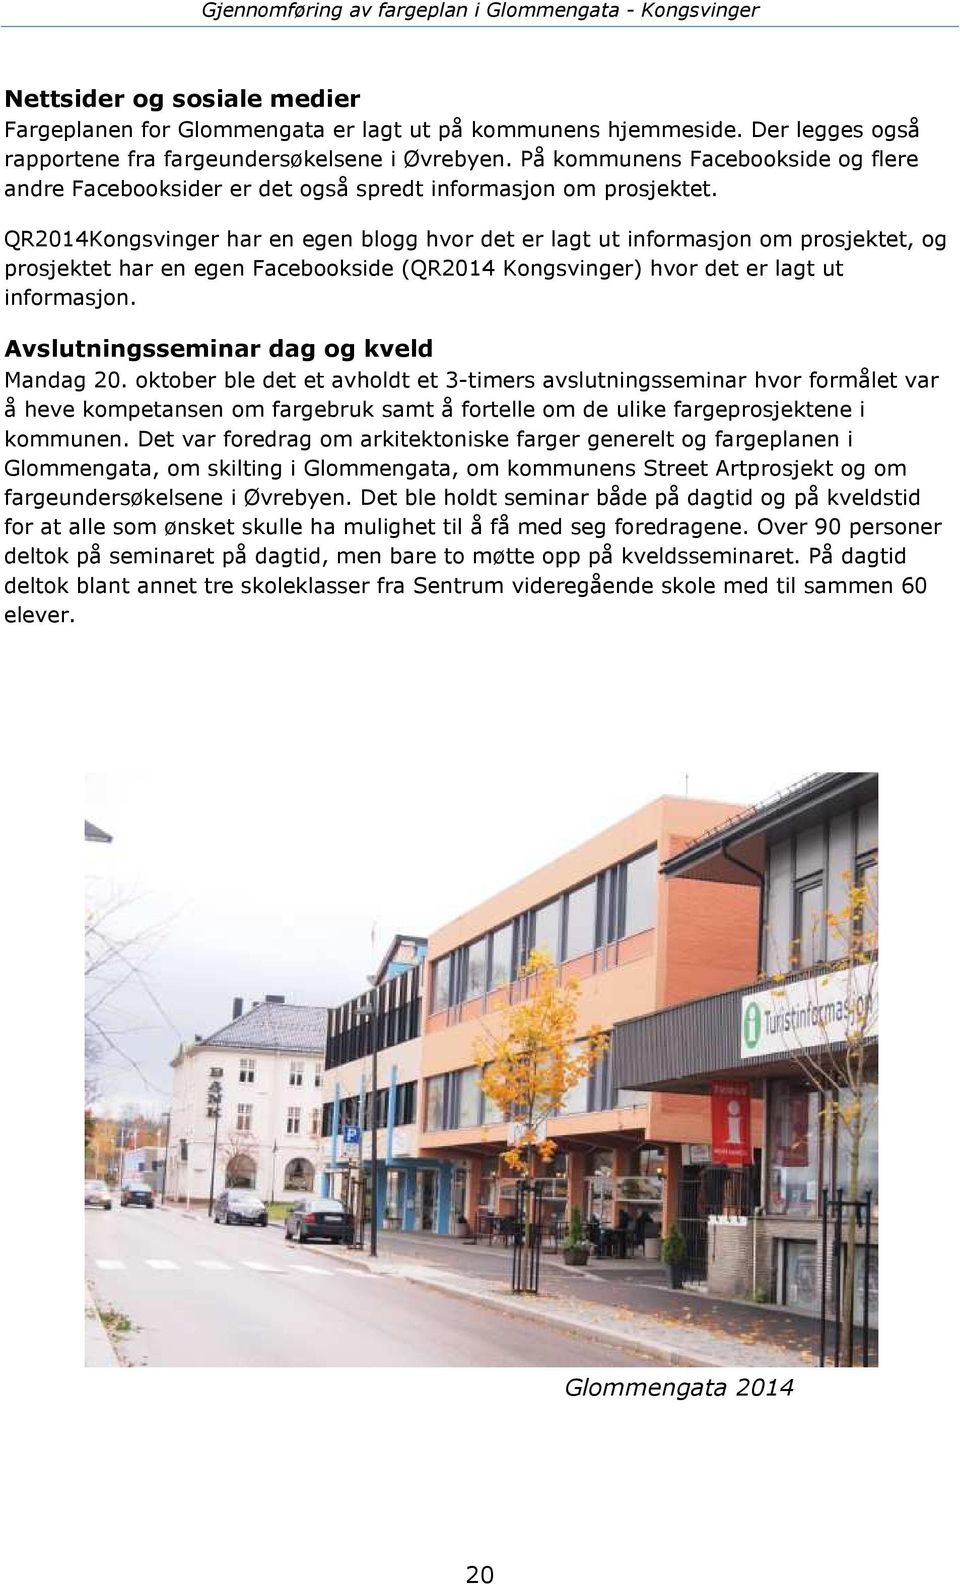 QR2014Kongsvinger har en egen blogg hvor det er lagt ut informasjon om prosjektet, og prosjektet har en egen Facebookside (QR2014 Kongsvinger) hvor det er lagt ut informasjon.